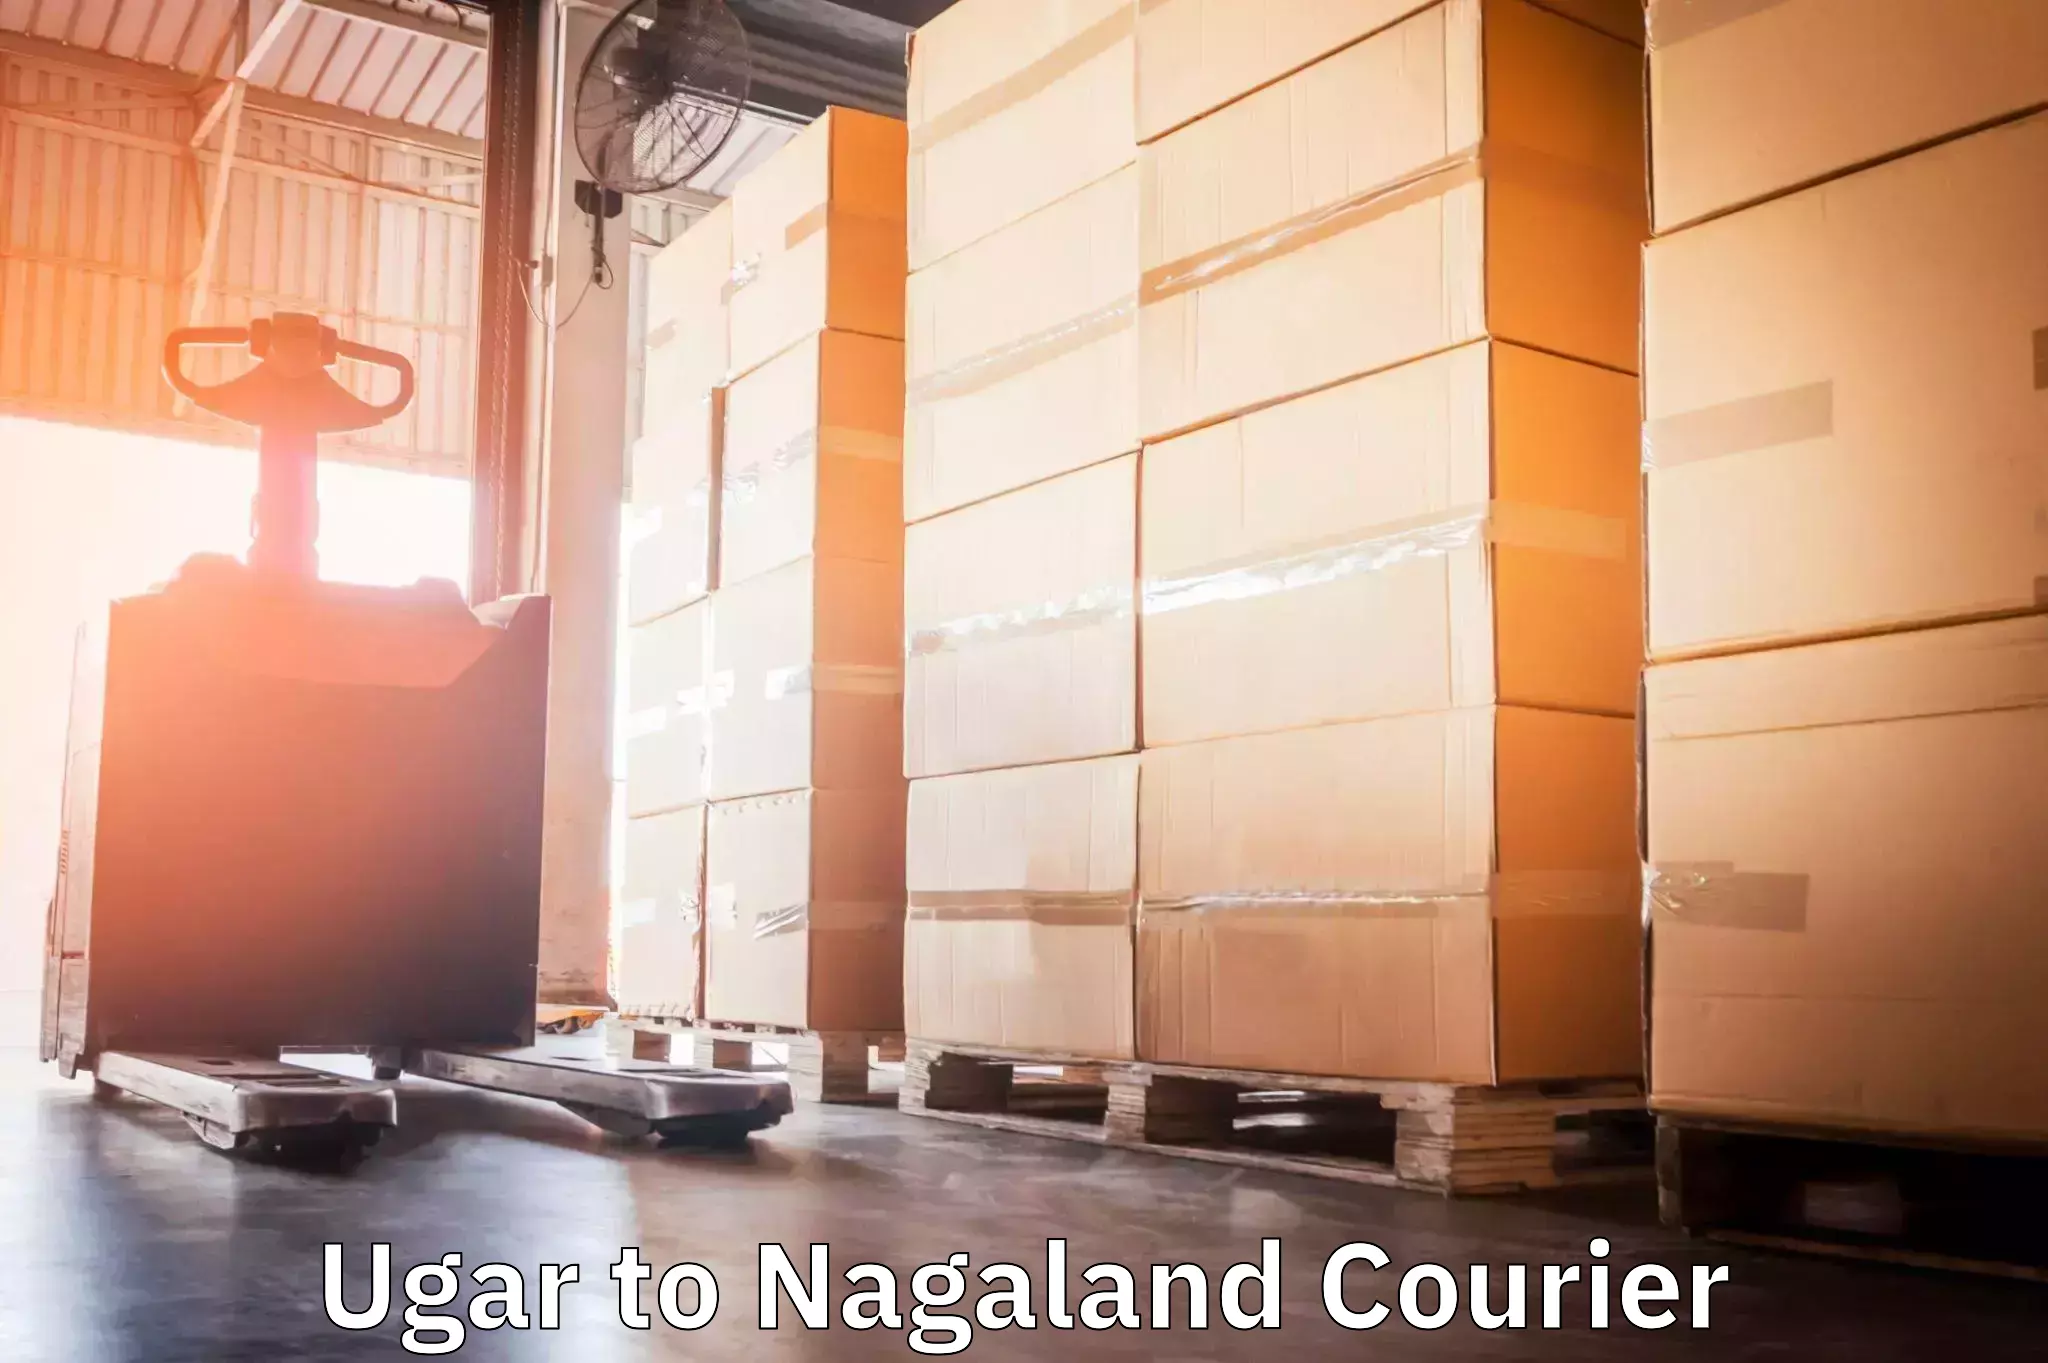 Nationwide shipping capabilities Ugar to NIT Nagaland